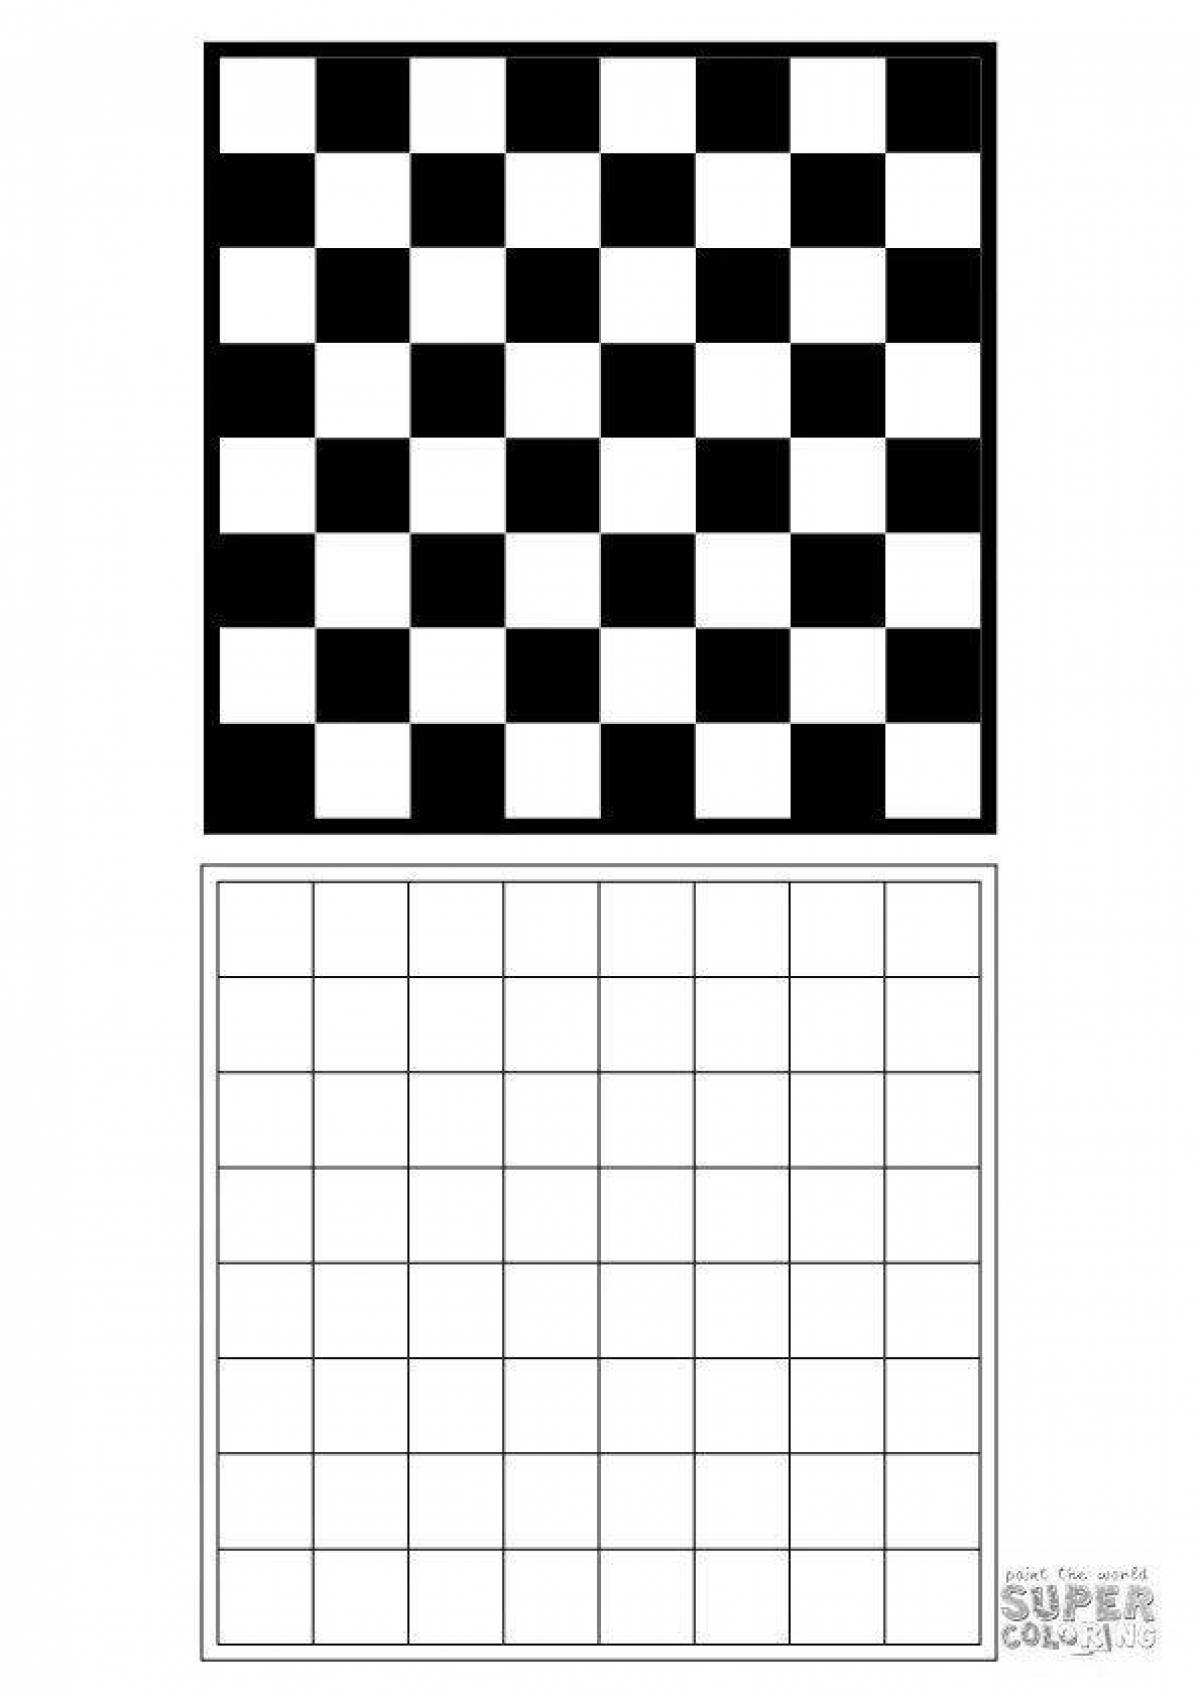 Children's chessboard #28